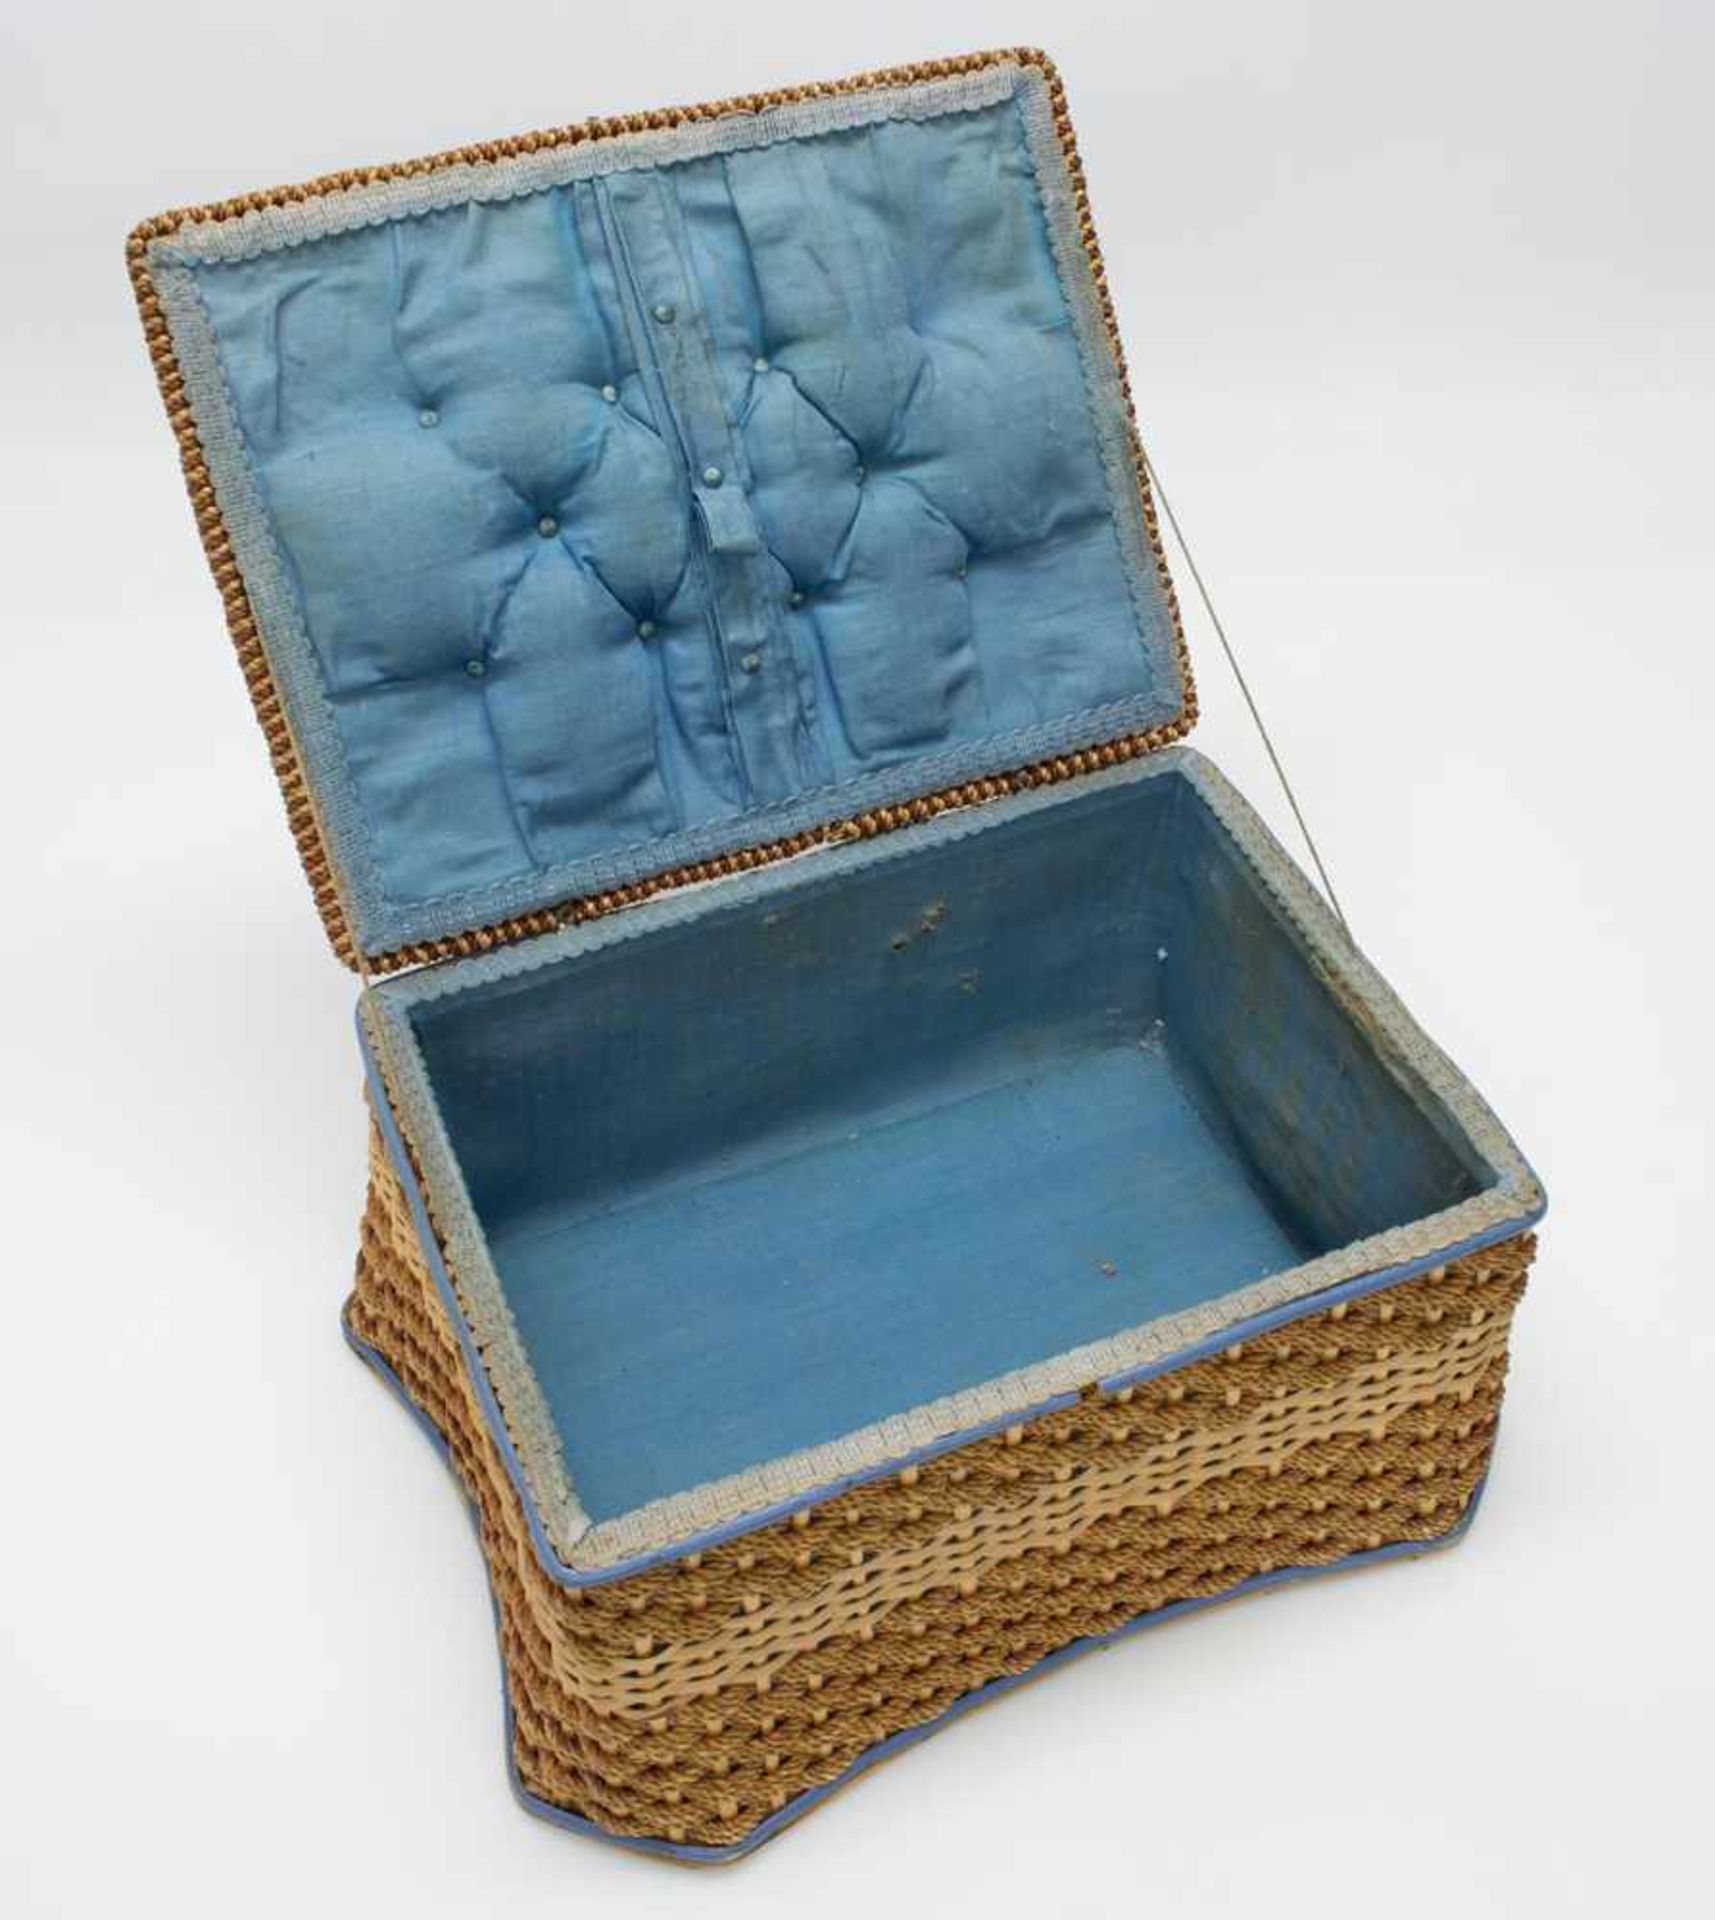 Nähkörbchenum 1900, kunstvolle Korbflechtarbeit, innen m. blauem Stoff u. Polster ausgekleidet, - Bild 2 aus 2